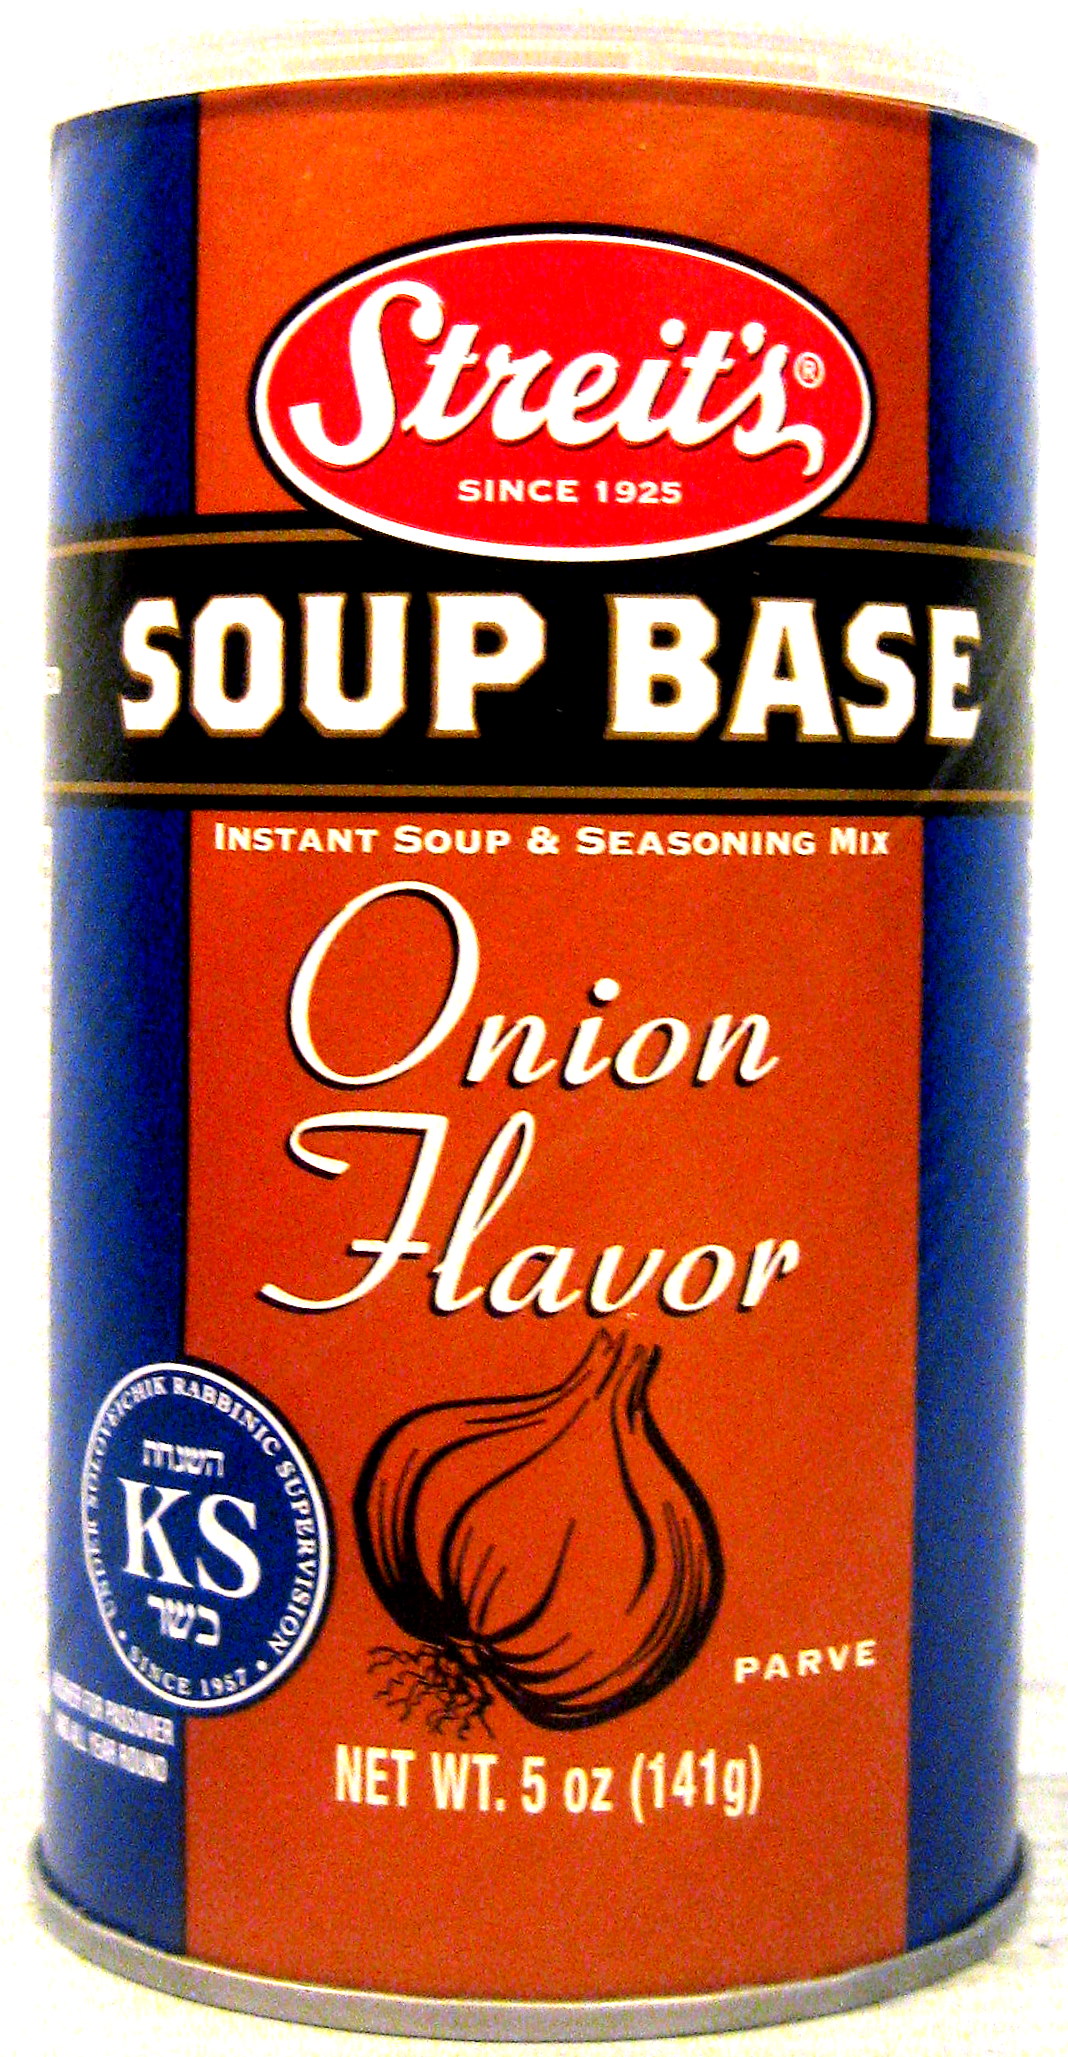 Streit’s Soup Base Onion Flavor 5 oz